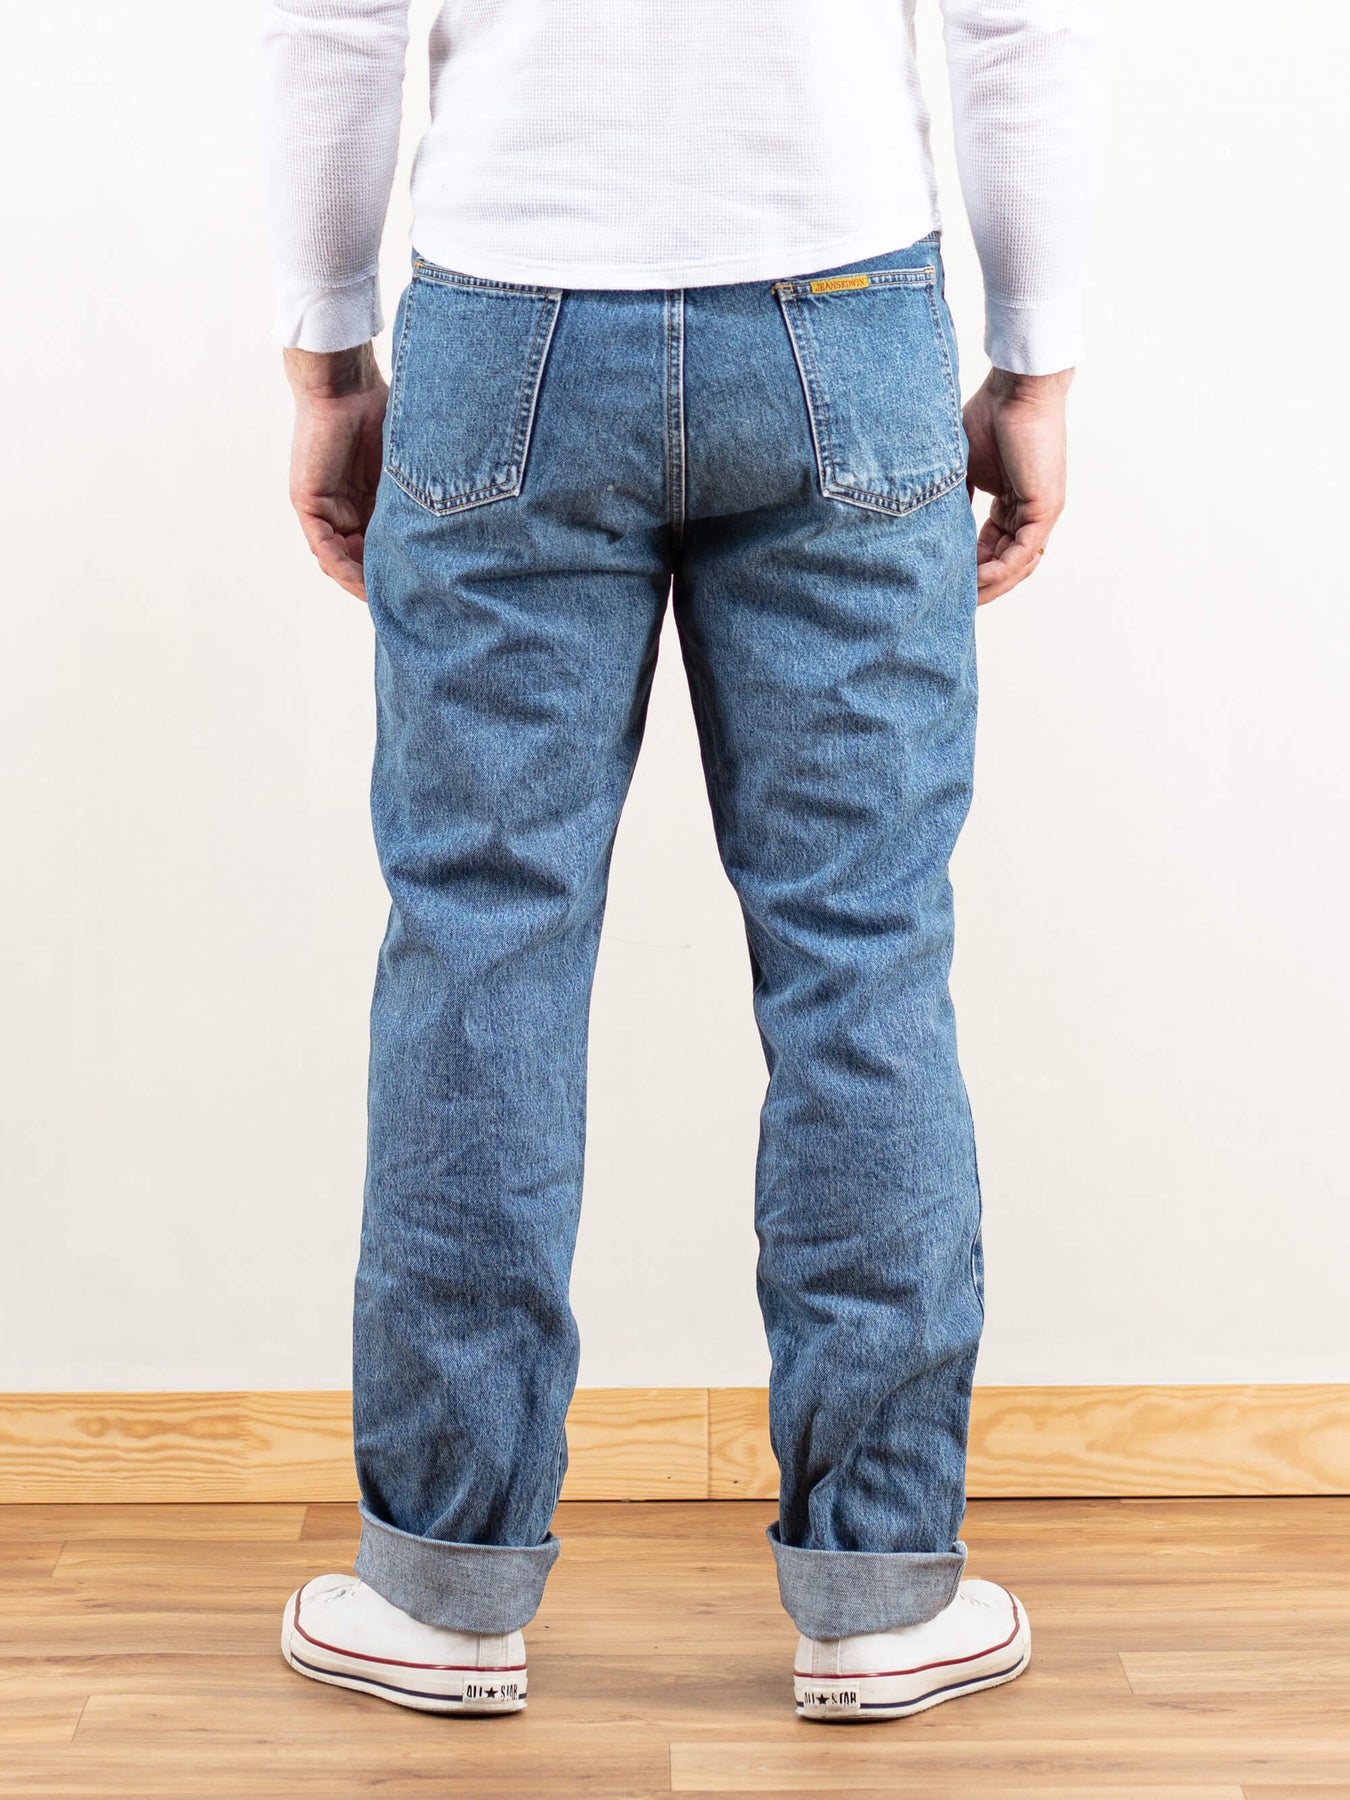 Men's Non Denim Cotton Plain Trousers at Best Price in Kanpur | R. A.  Enterprises